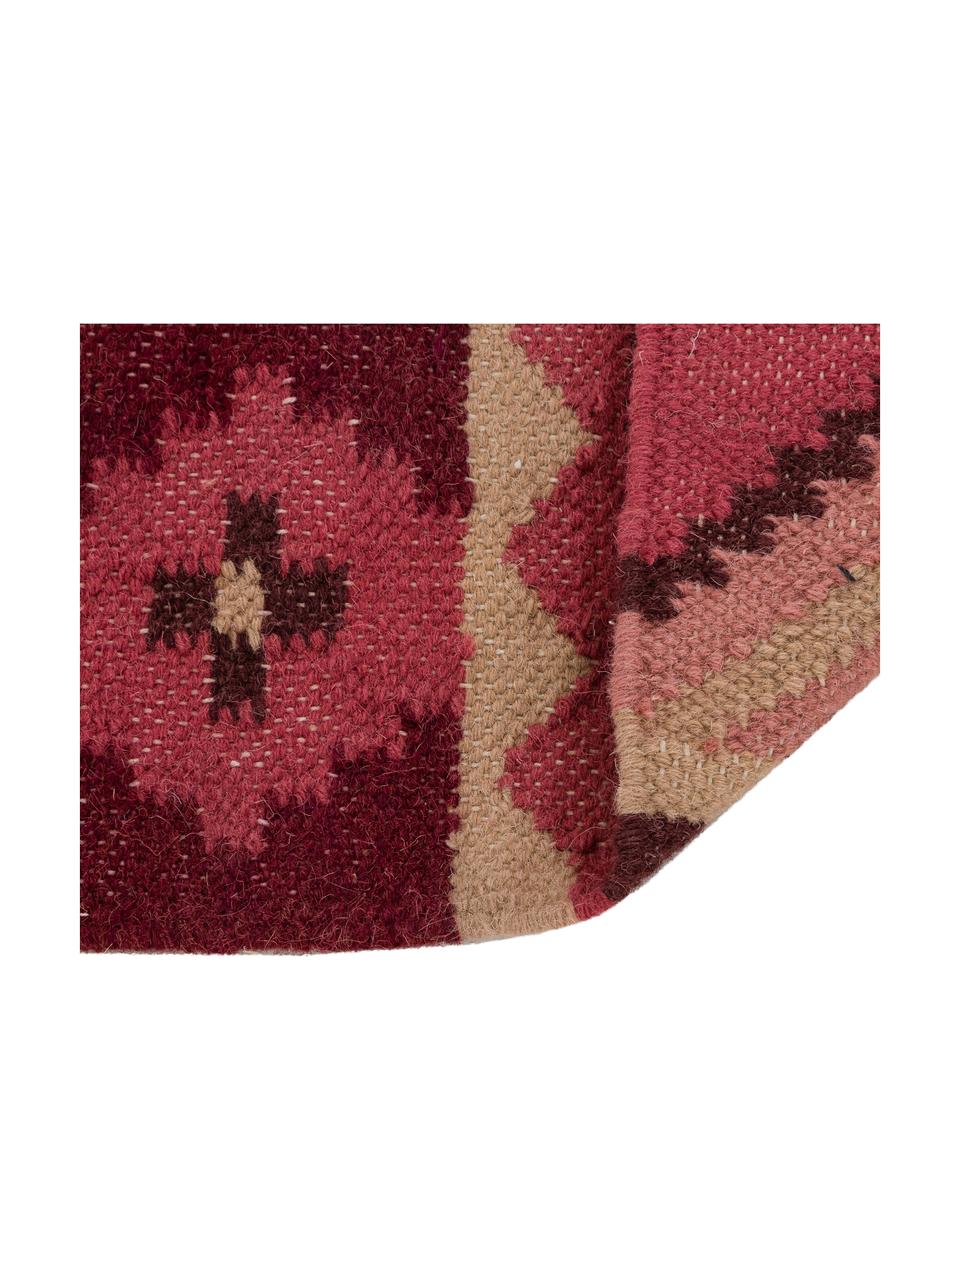 Vlnený koberec Gypsy v ružovej farbe, Bordová, krémová